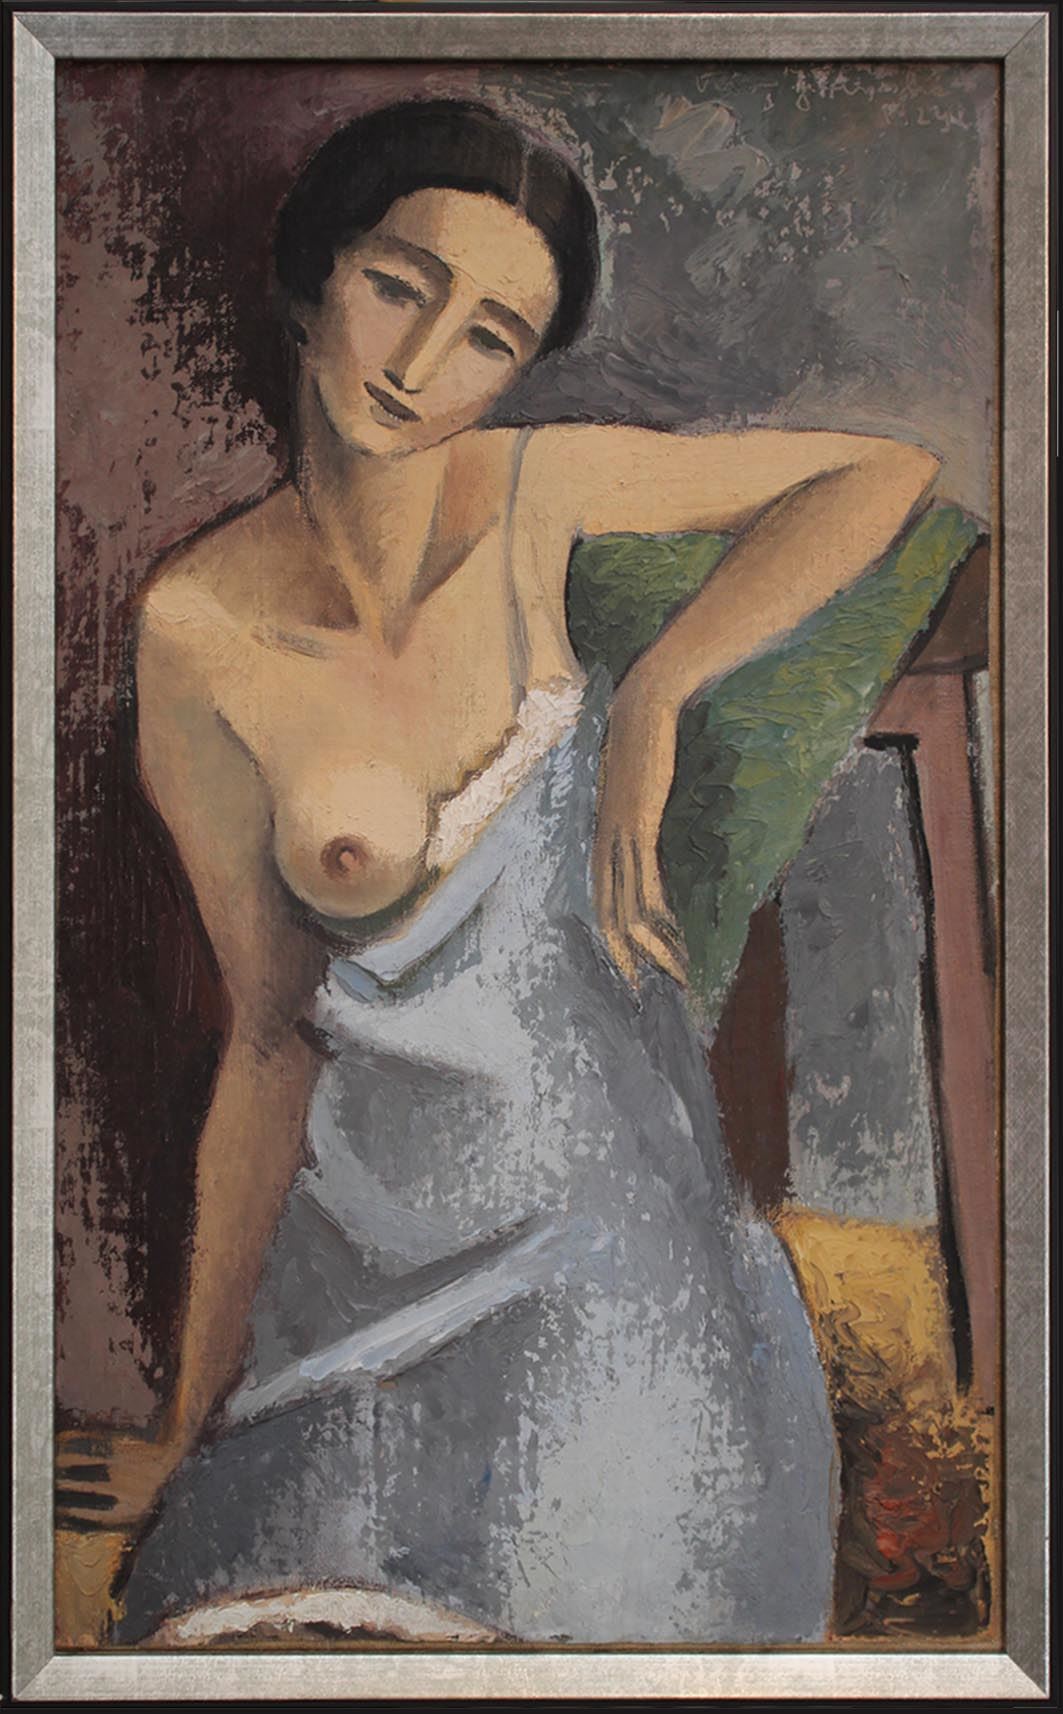 Žena s odhaleným ňadrem (Lydia Wisiak), 1929, olej na plátně